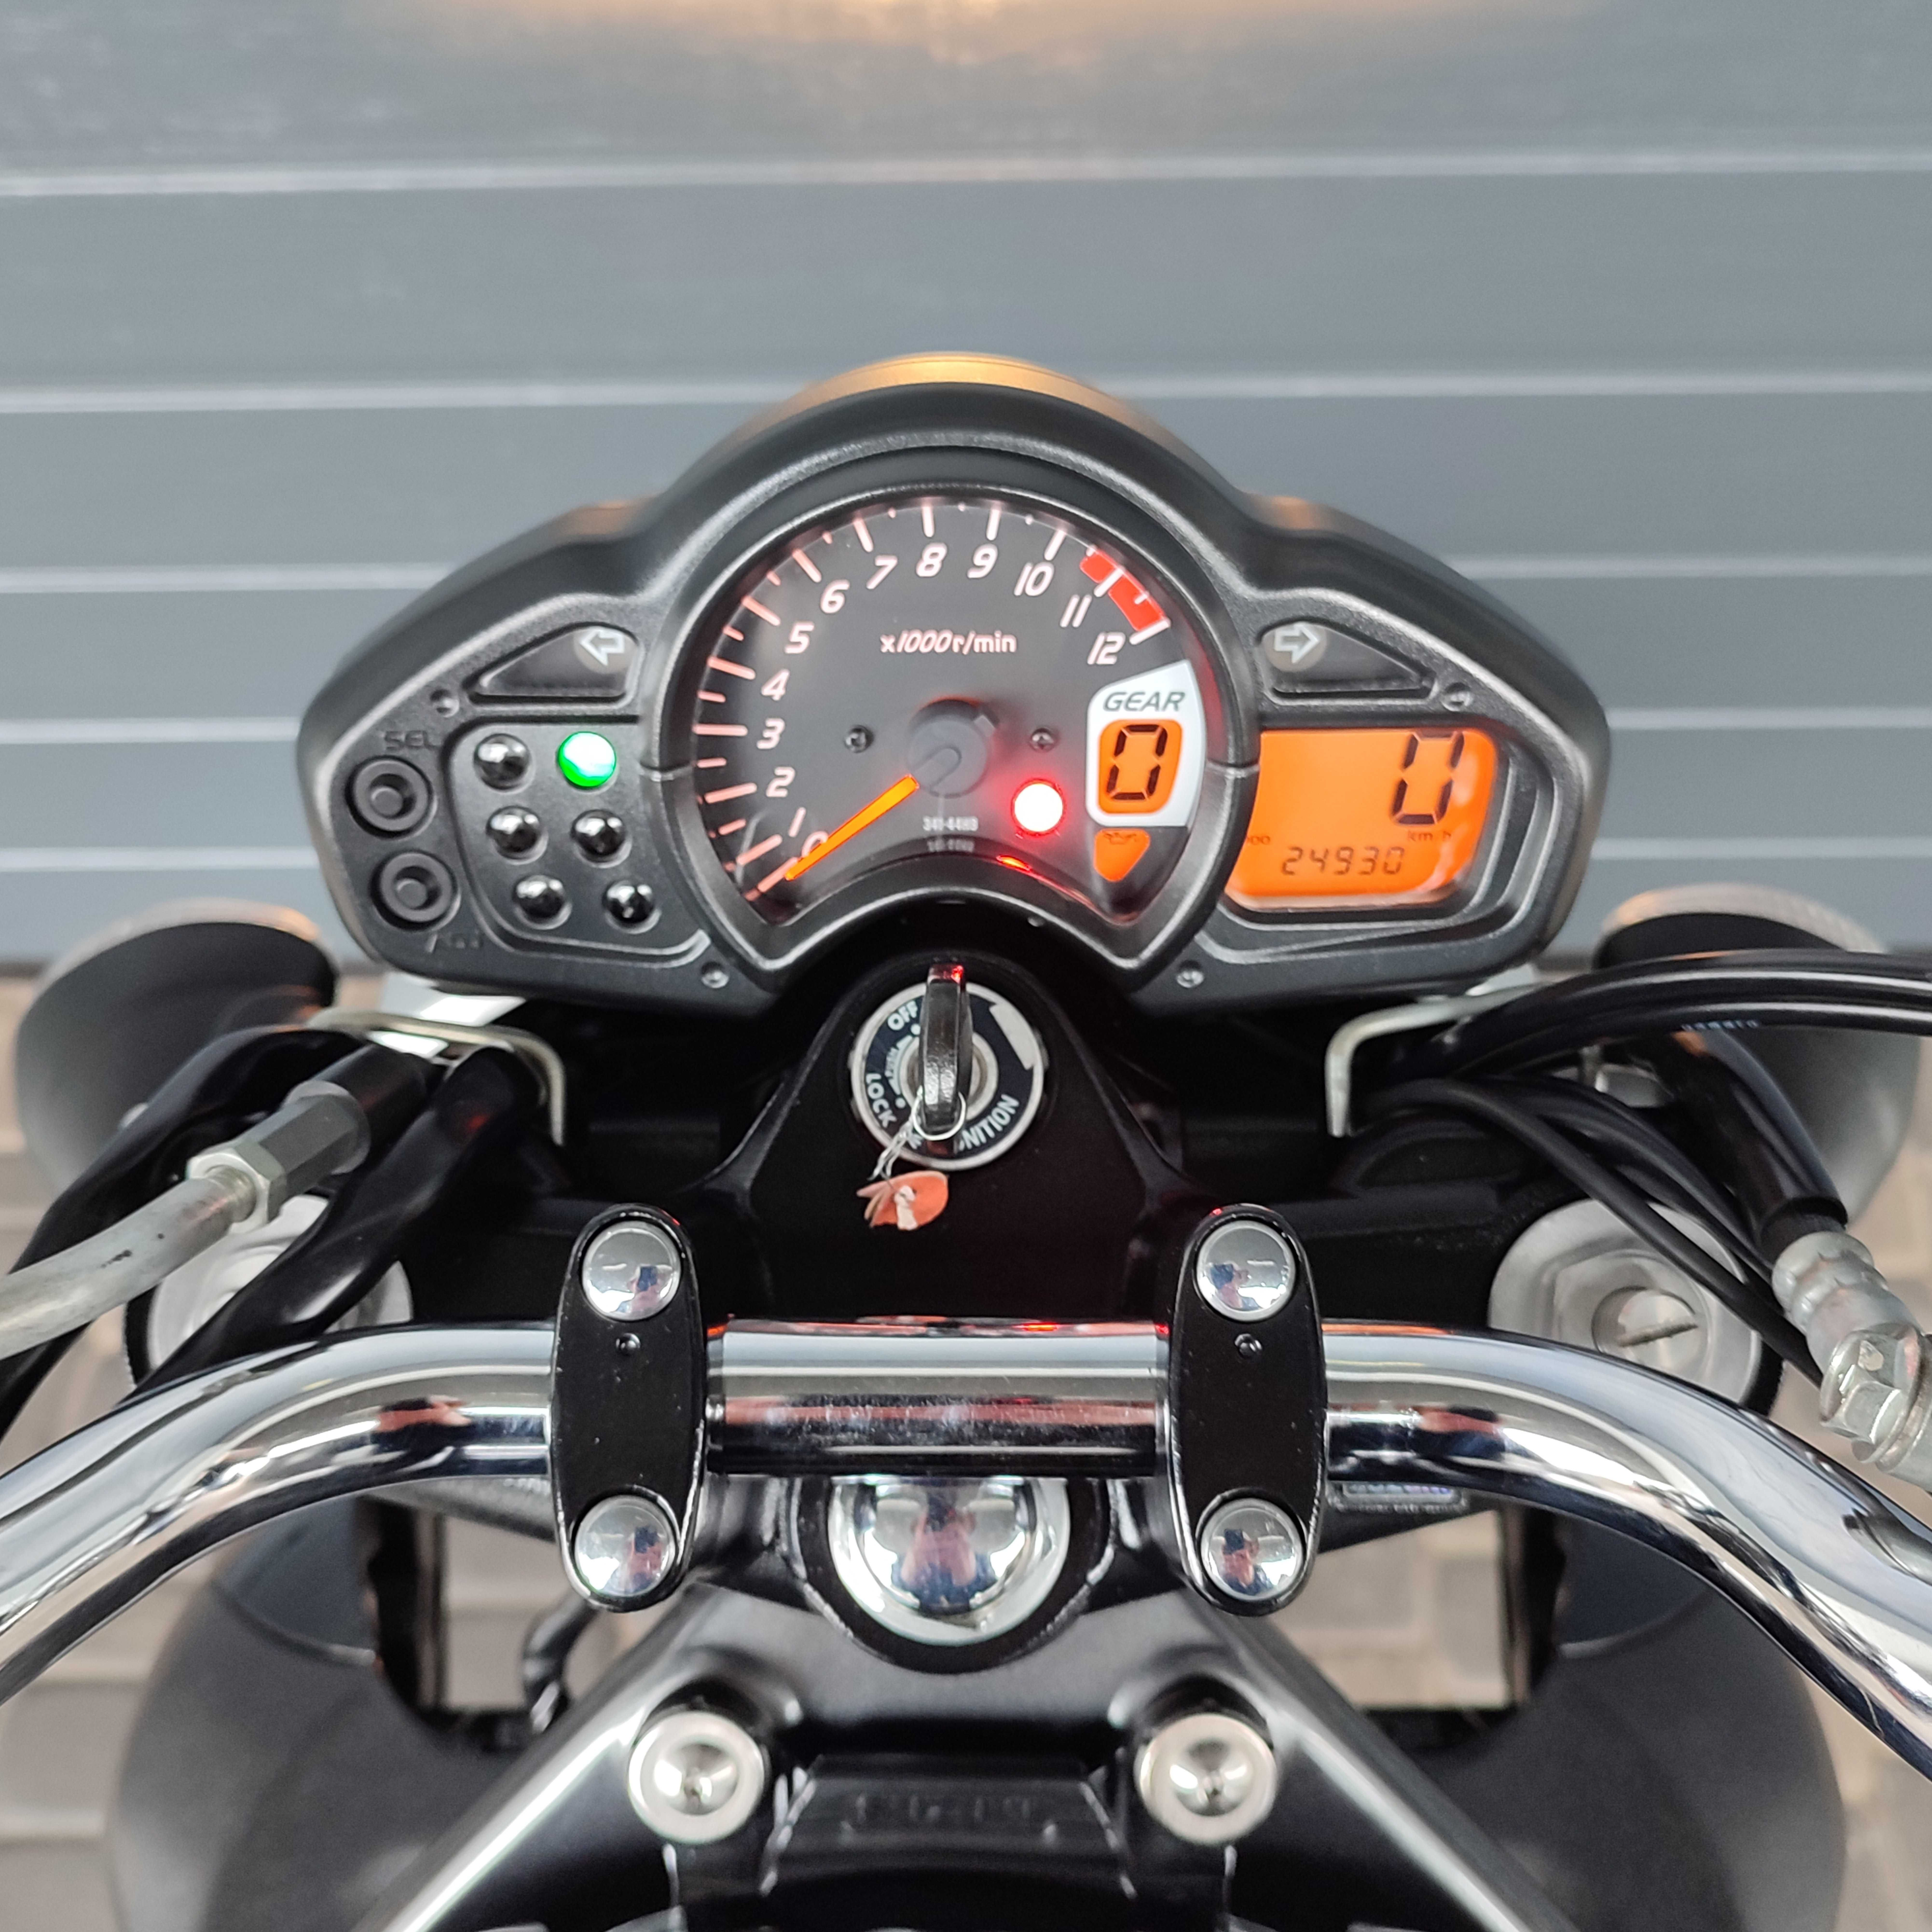 Продам мотоцикл Suzuki Gladius 650 (7950)